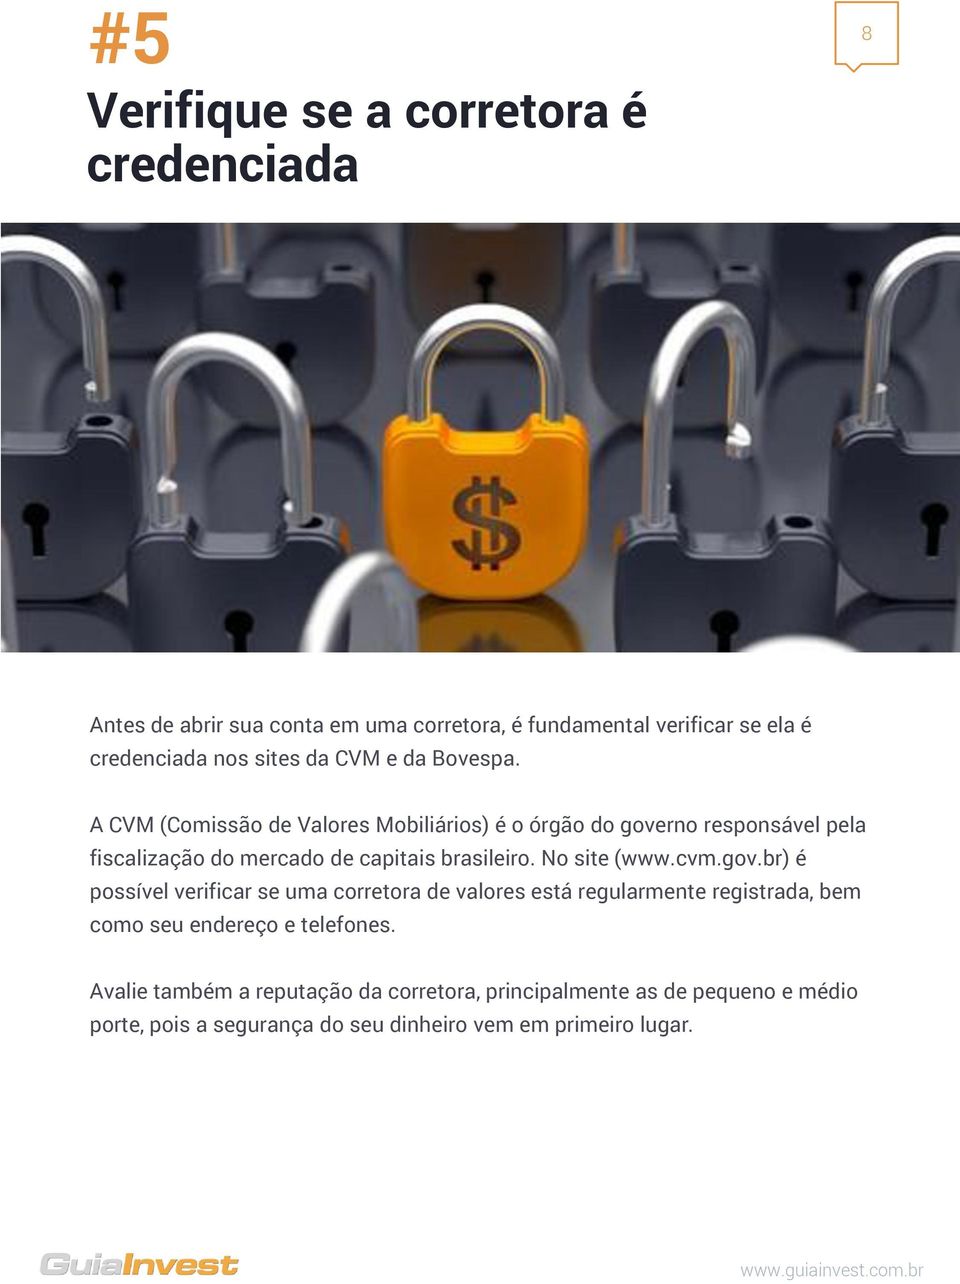 A CVM (Comissão de Valores Mobiliários) é o órgão do governo responsável pela fiscalização do mercado de capitais brasileiro. No site (www.